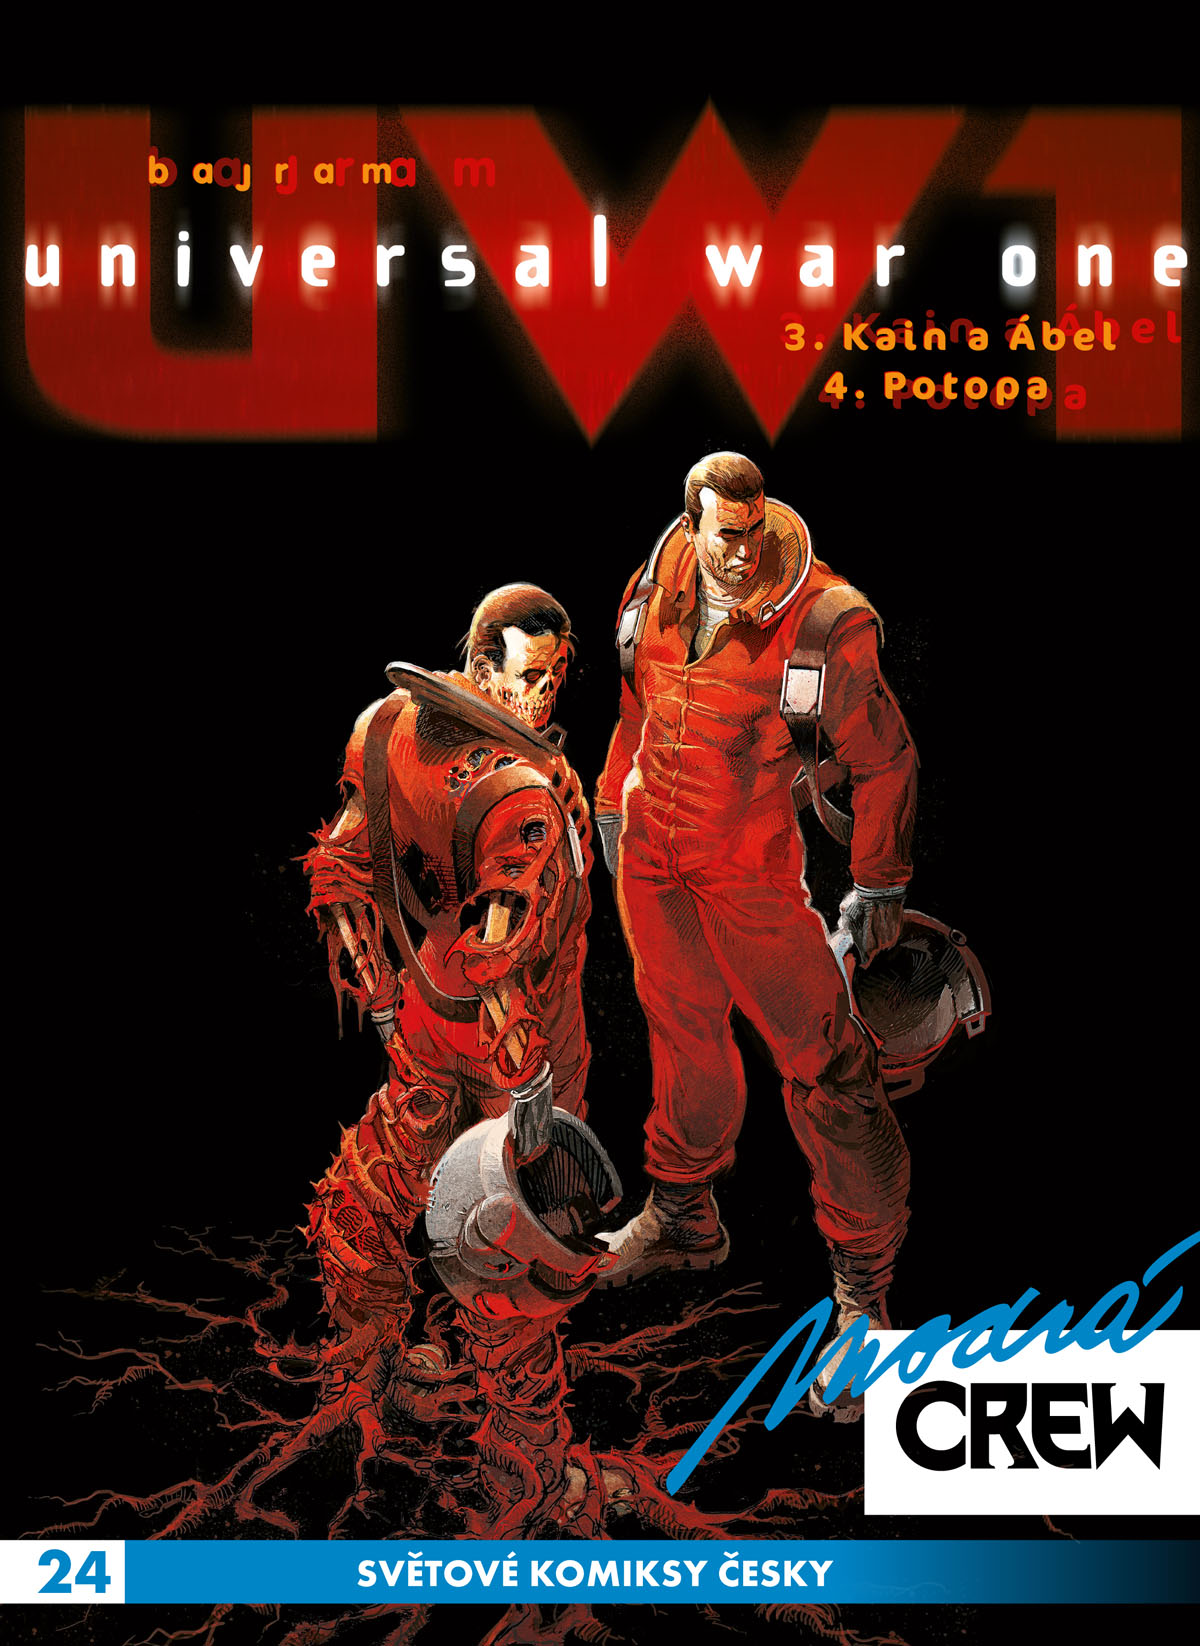 Modrá Crew 24: Universal War One (3-4)